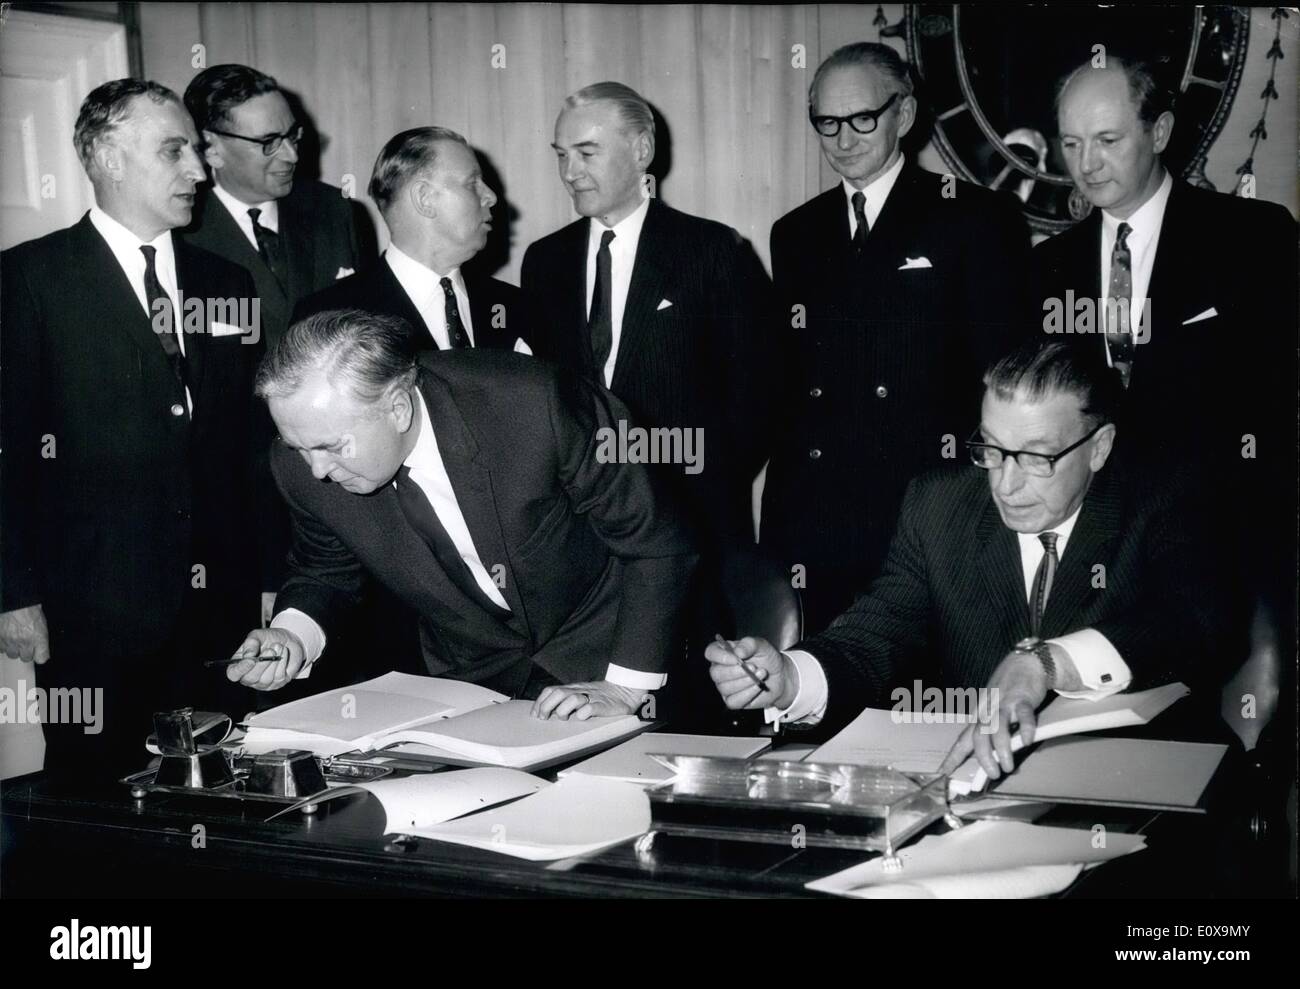 Il 12 Dic. 1965 - anglo-irlandese patto commerciale firmato. Sean Lemass destra , il Premier irlandese, e Harold Wilson, il Primo ministro britannico, pi Foto Stock